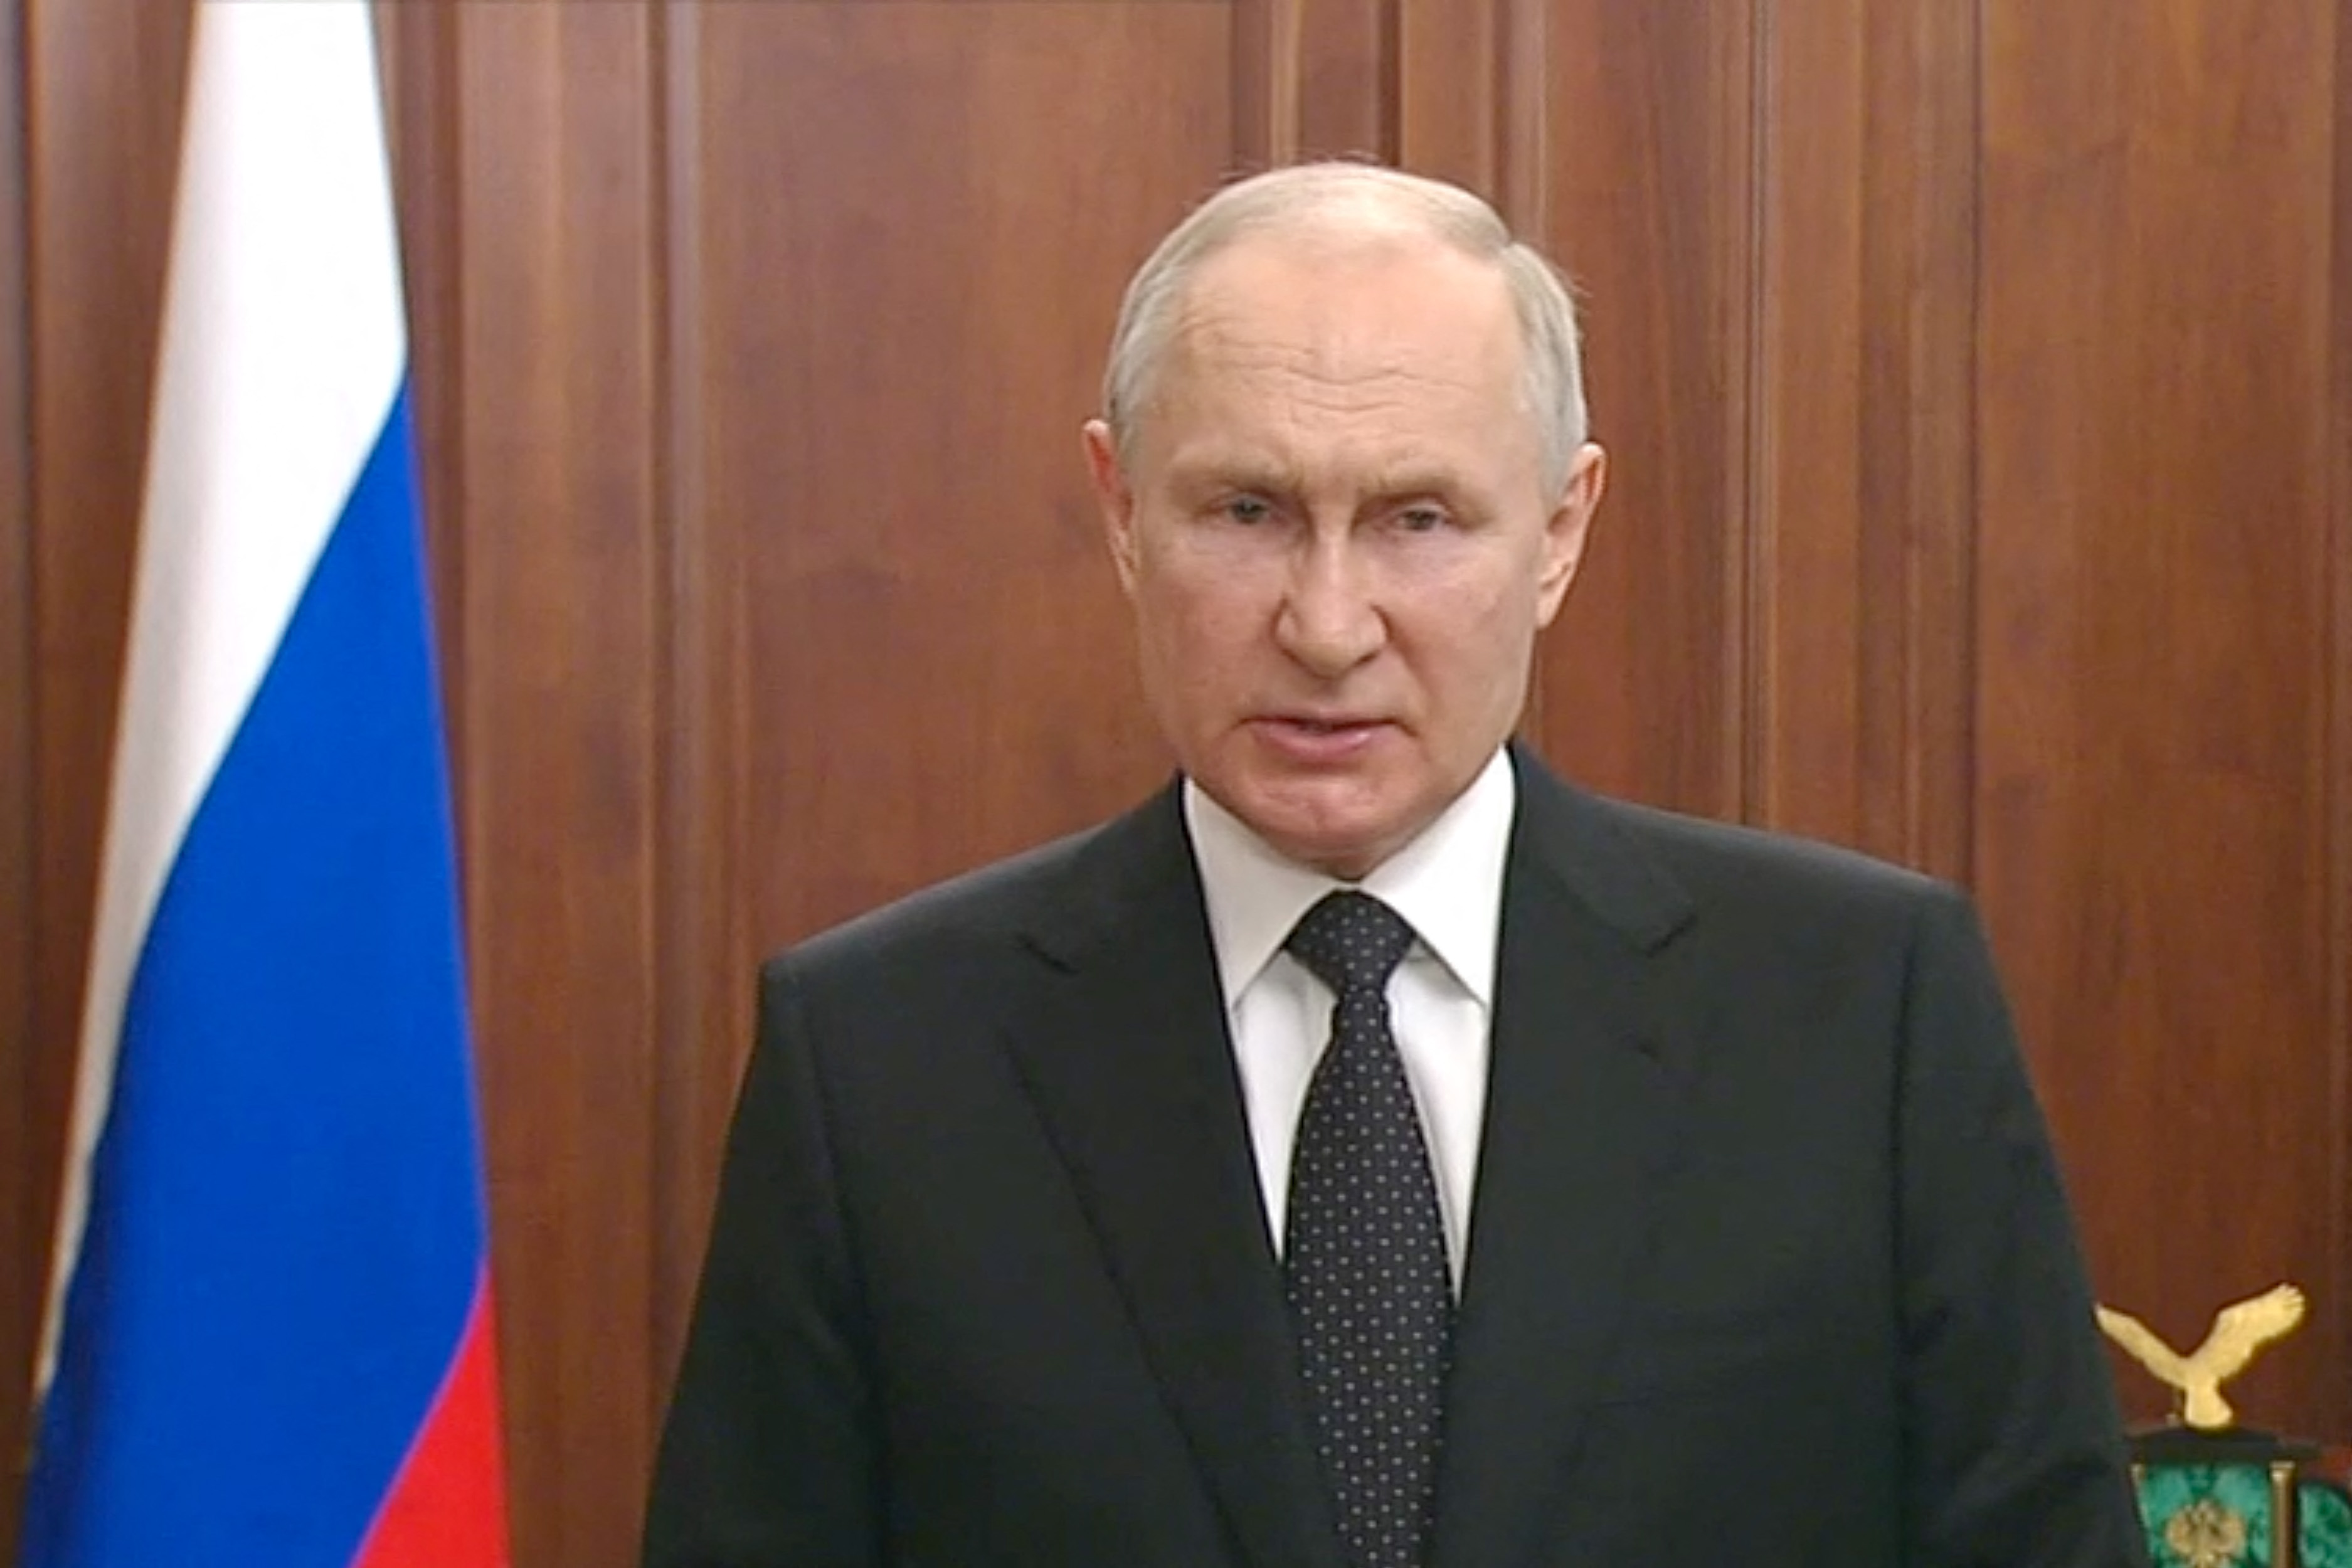 Wladimir Putin hielt nach dem Aufstand eine seltene Ansprache am frühen Morgen